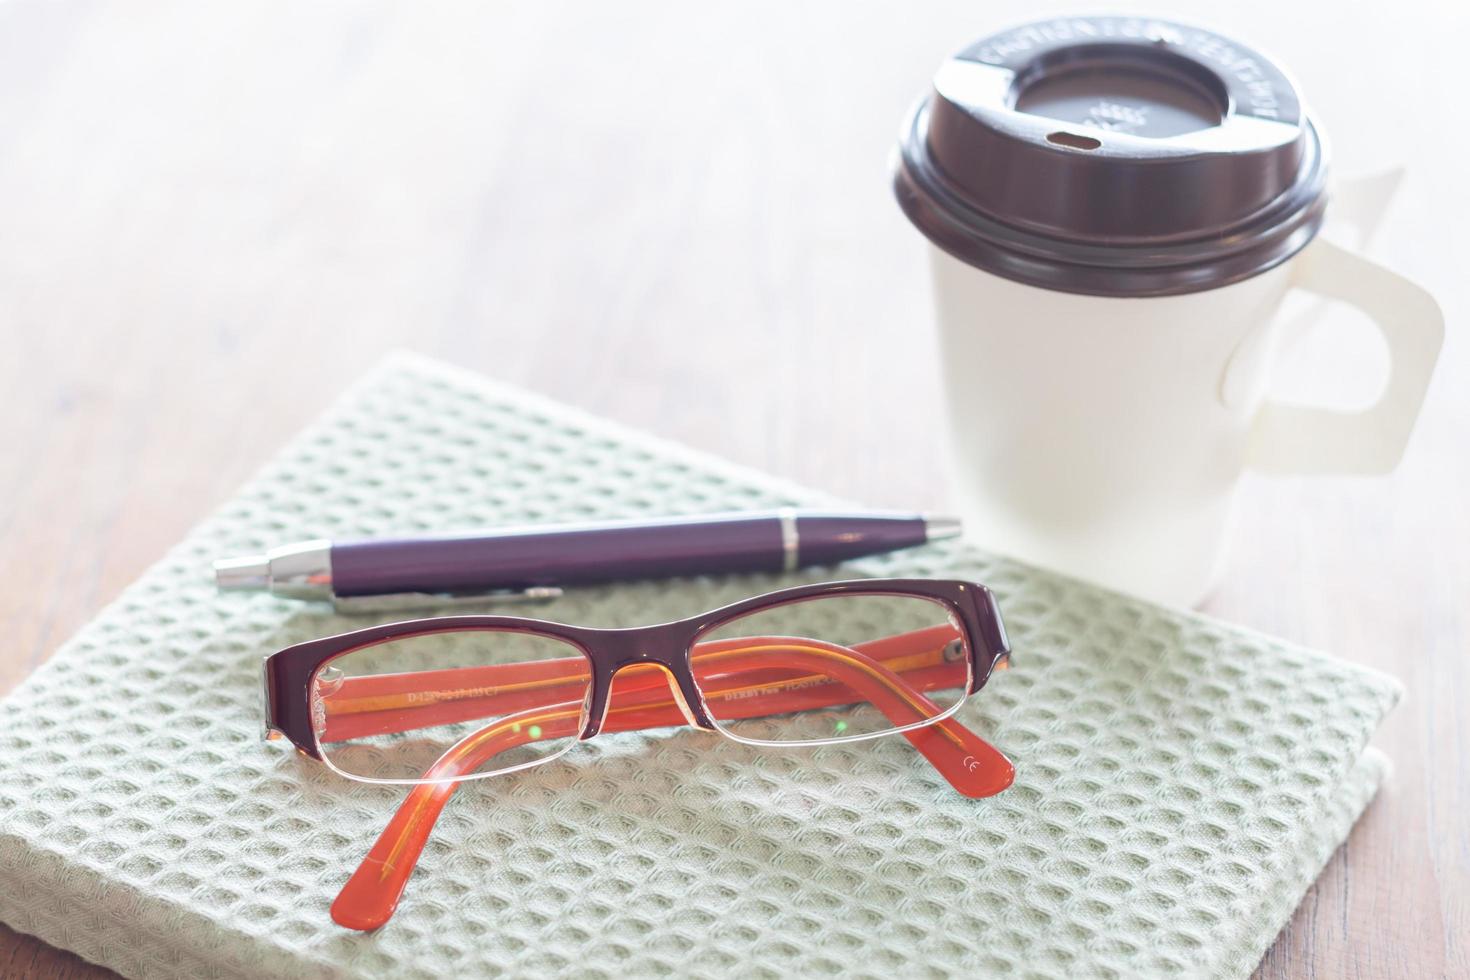 cahier, stylo, lunettes et une tasse de café sur une table en bois photo